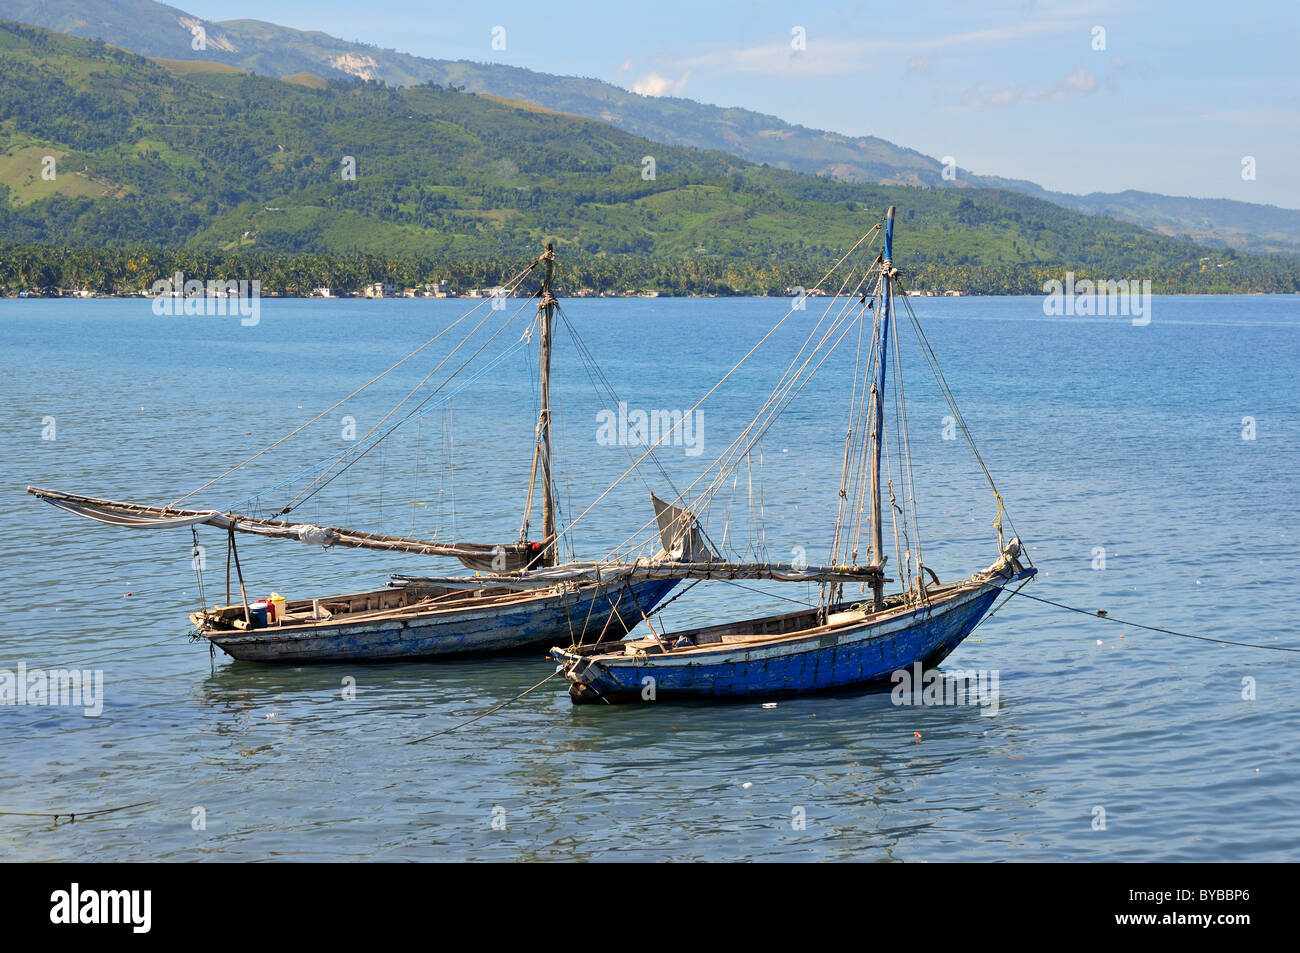 Angelboote/Fischerboote in der Nähe von einem Fischerdorf an der karibischen Küste, Petit Goave, Haiti, Karibik, Mittelamerika Stockfoto